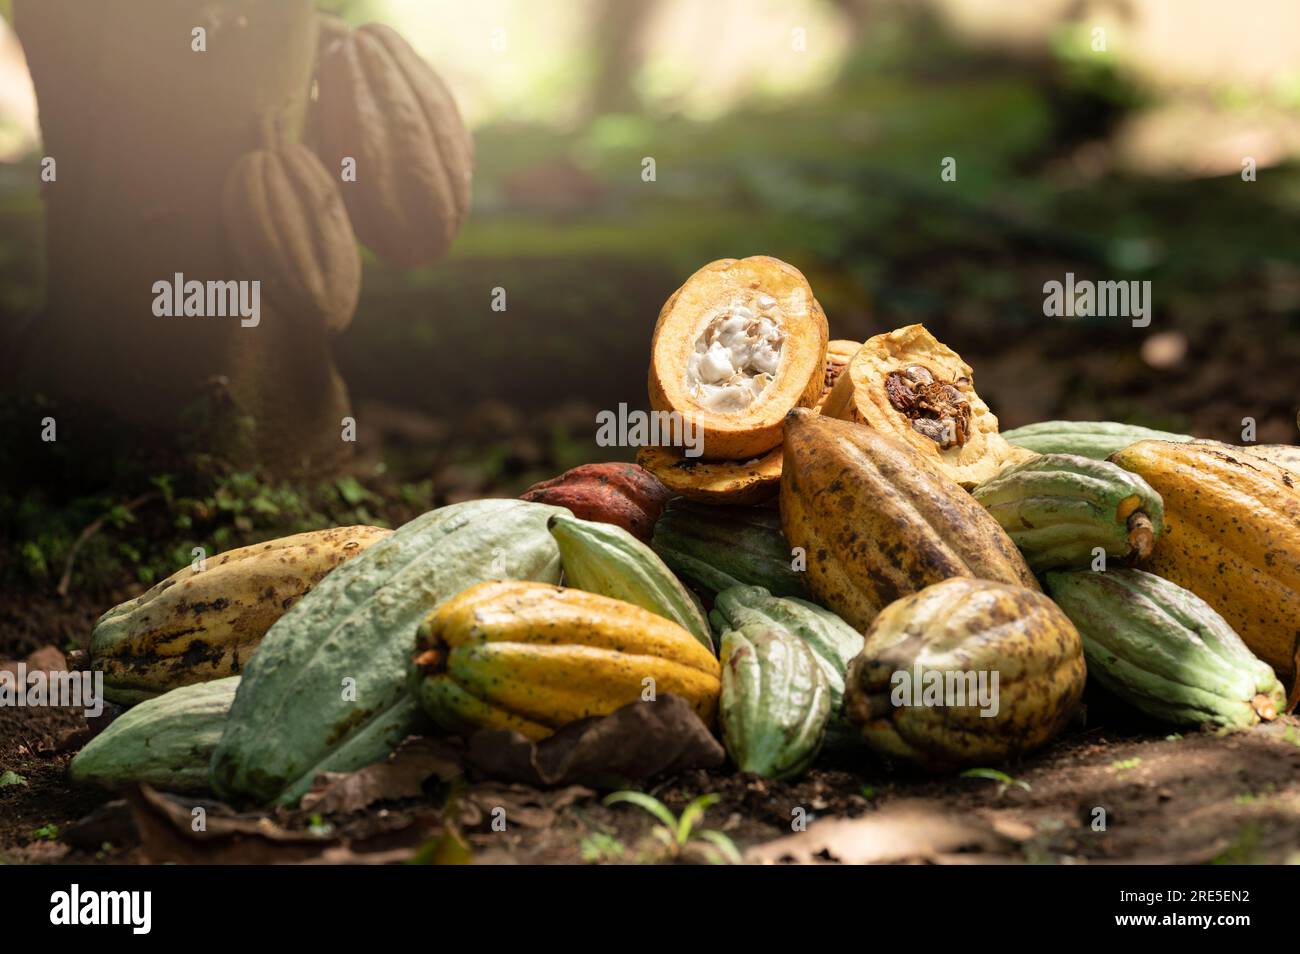 Gousses de cacao dans le champ de récolte. Pile de gousses de cacao jaune et verte Banque D'Images